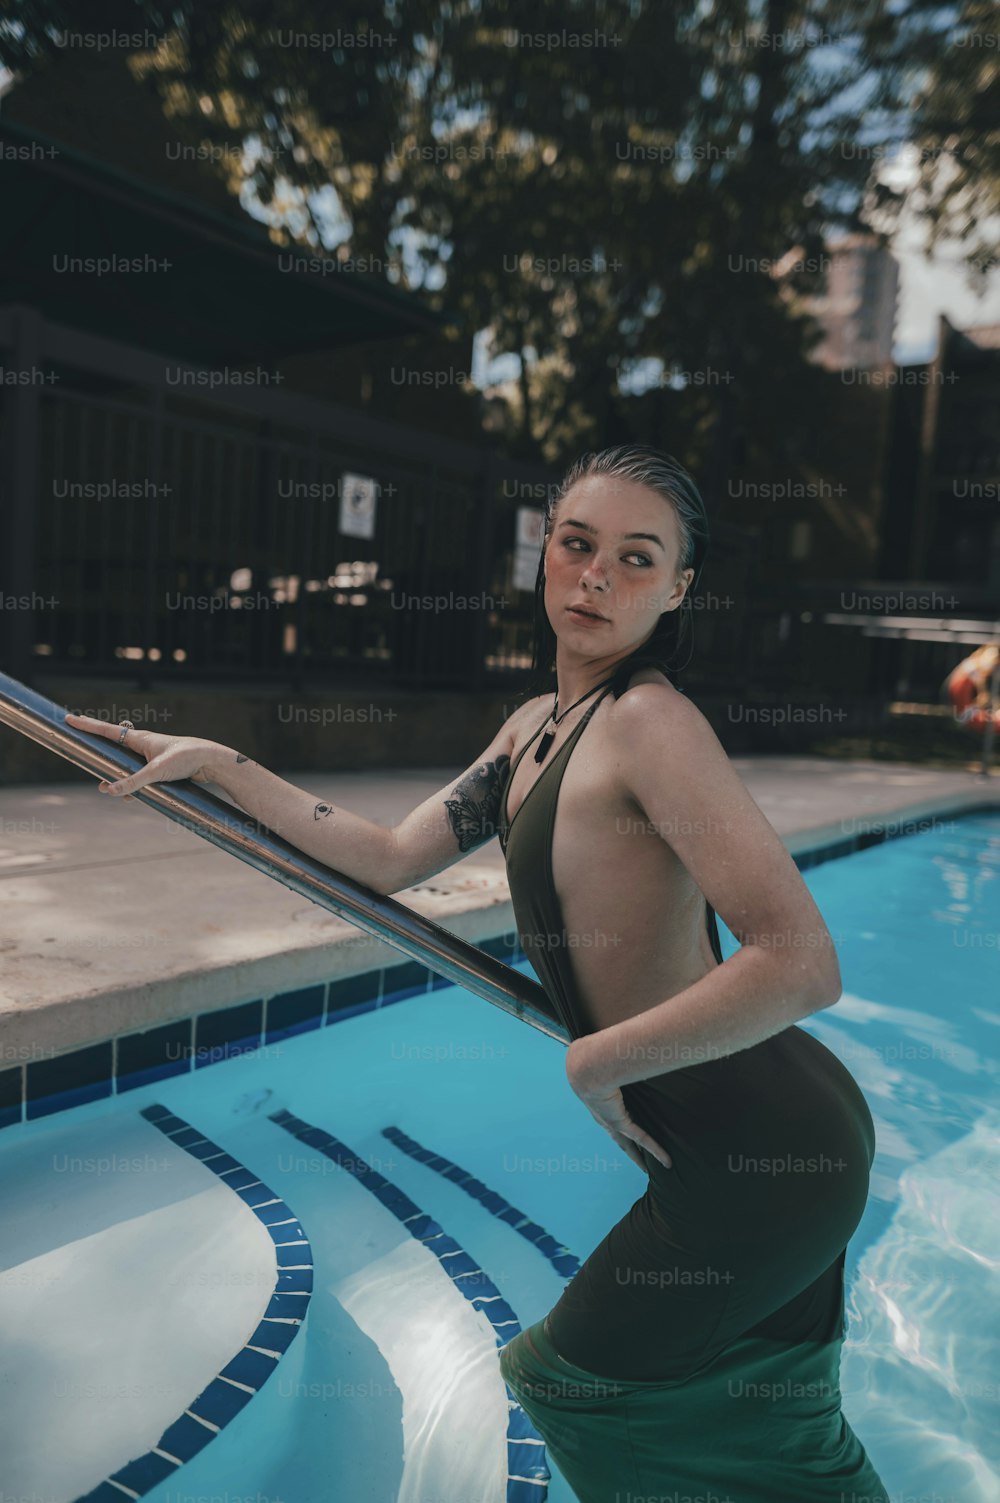 Una mujer en traje de baño parada en una piscina